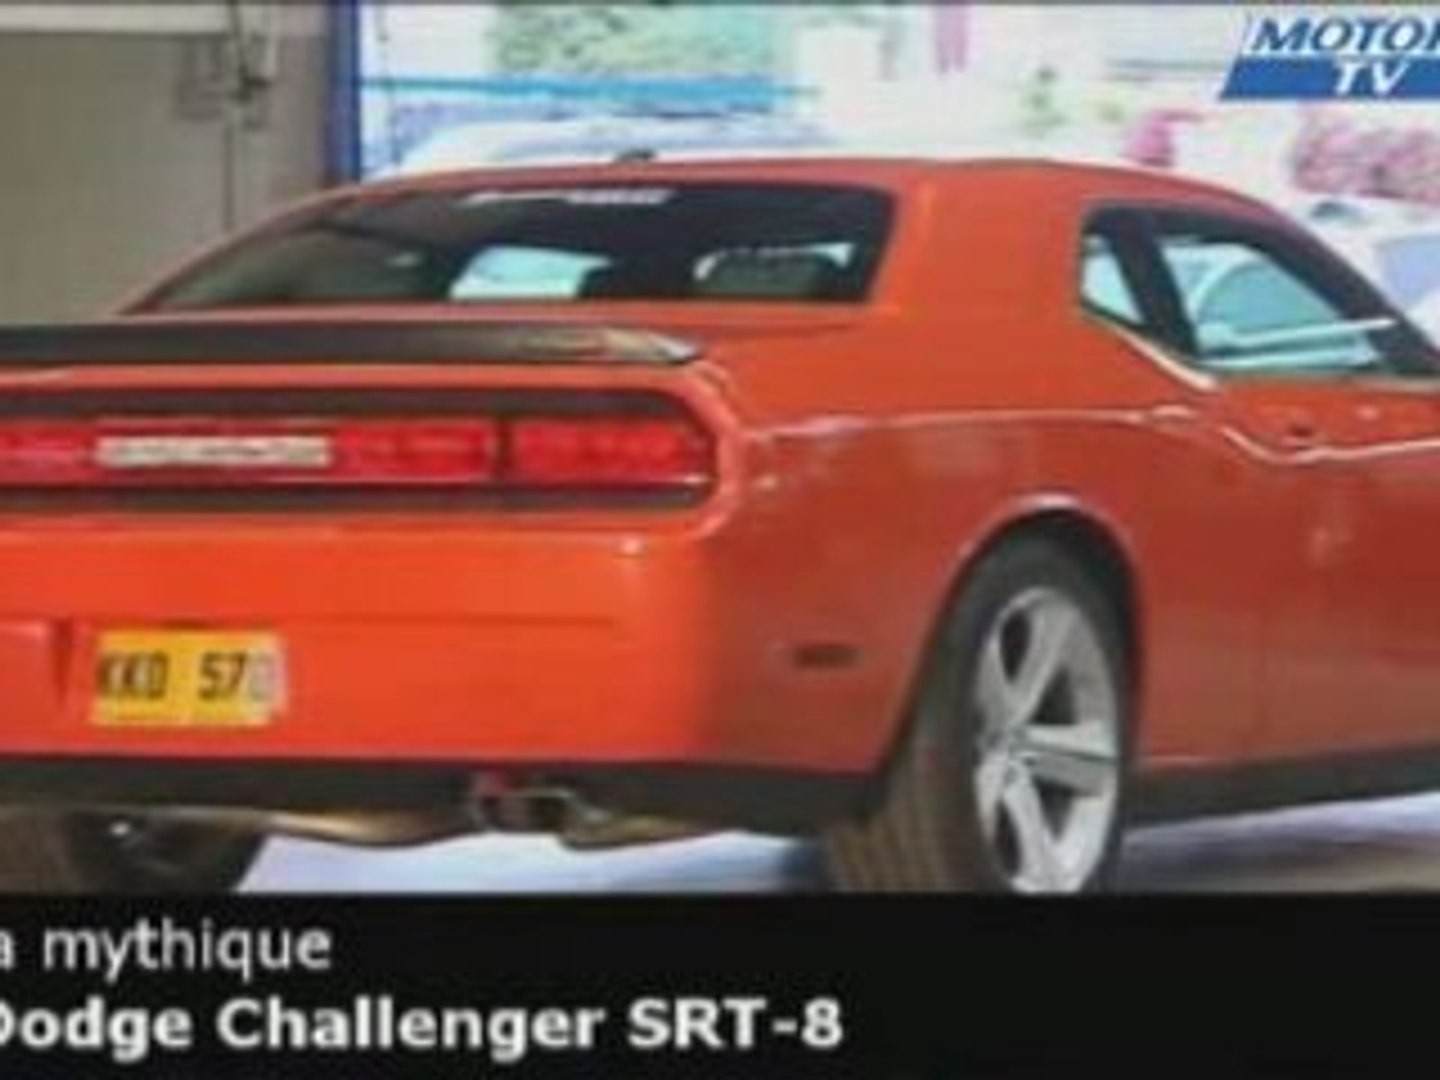 Exclusivite Maxi Test : La DODGE Challenger SRT-8 - Vidéo Dailymotion